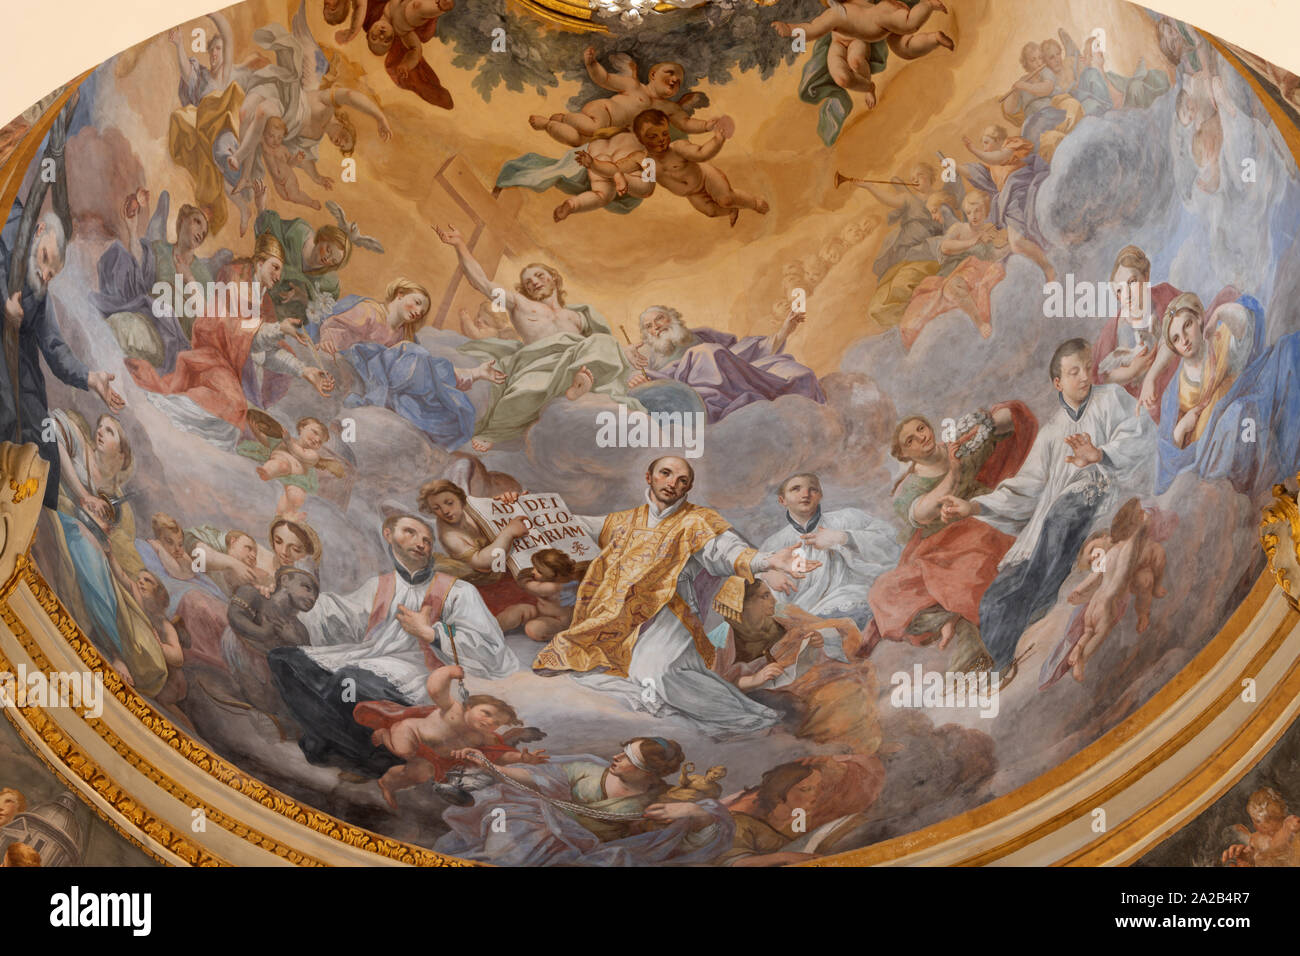 CATANIA, Italia - Aprile 6, 2018: l'affresco di apoteosi di San Ignace nella cupola della chiesa di San Francesco Borgia da Olivio Sozzi 1760. Foto Stock